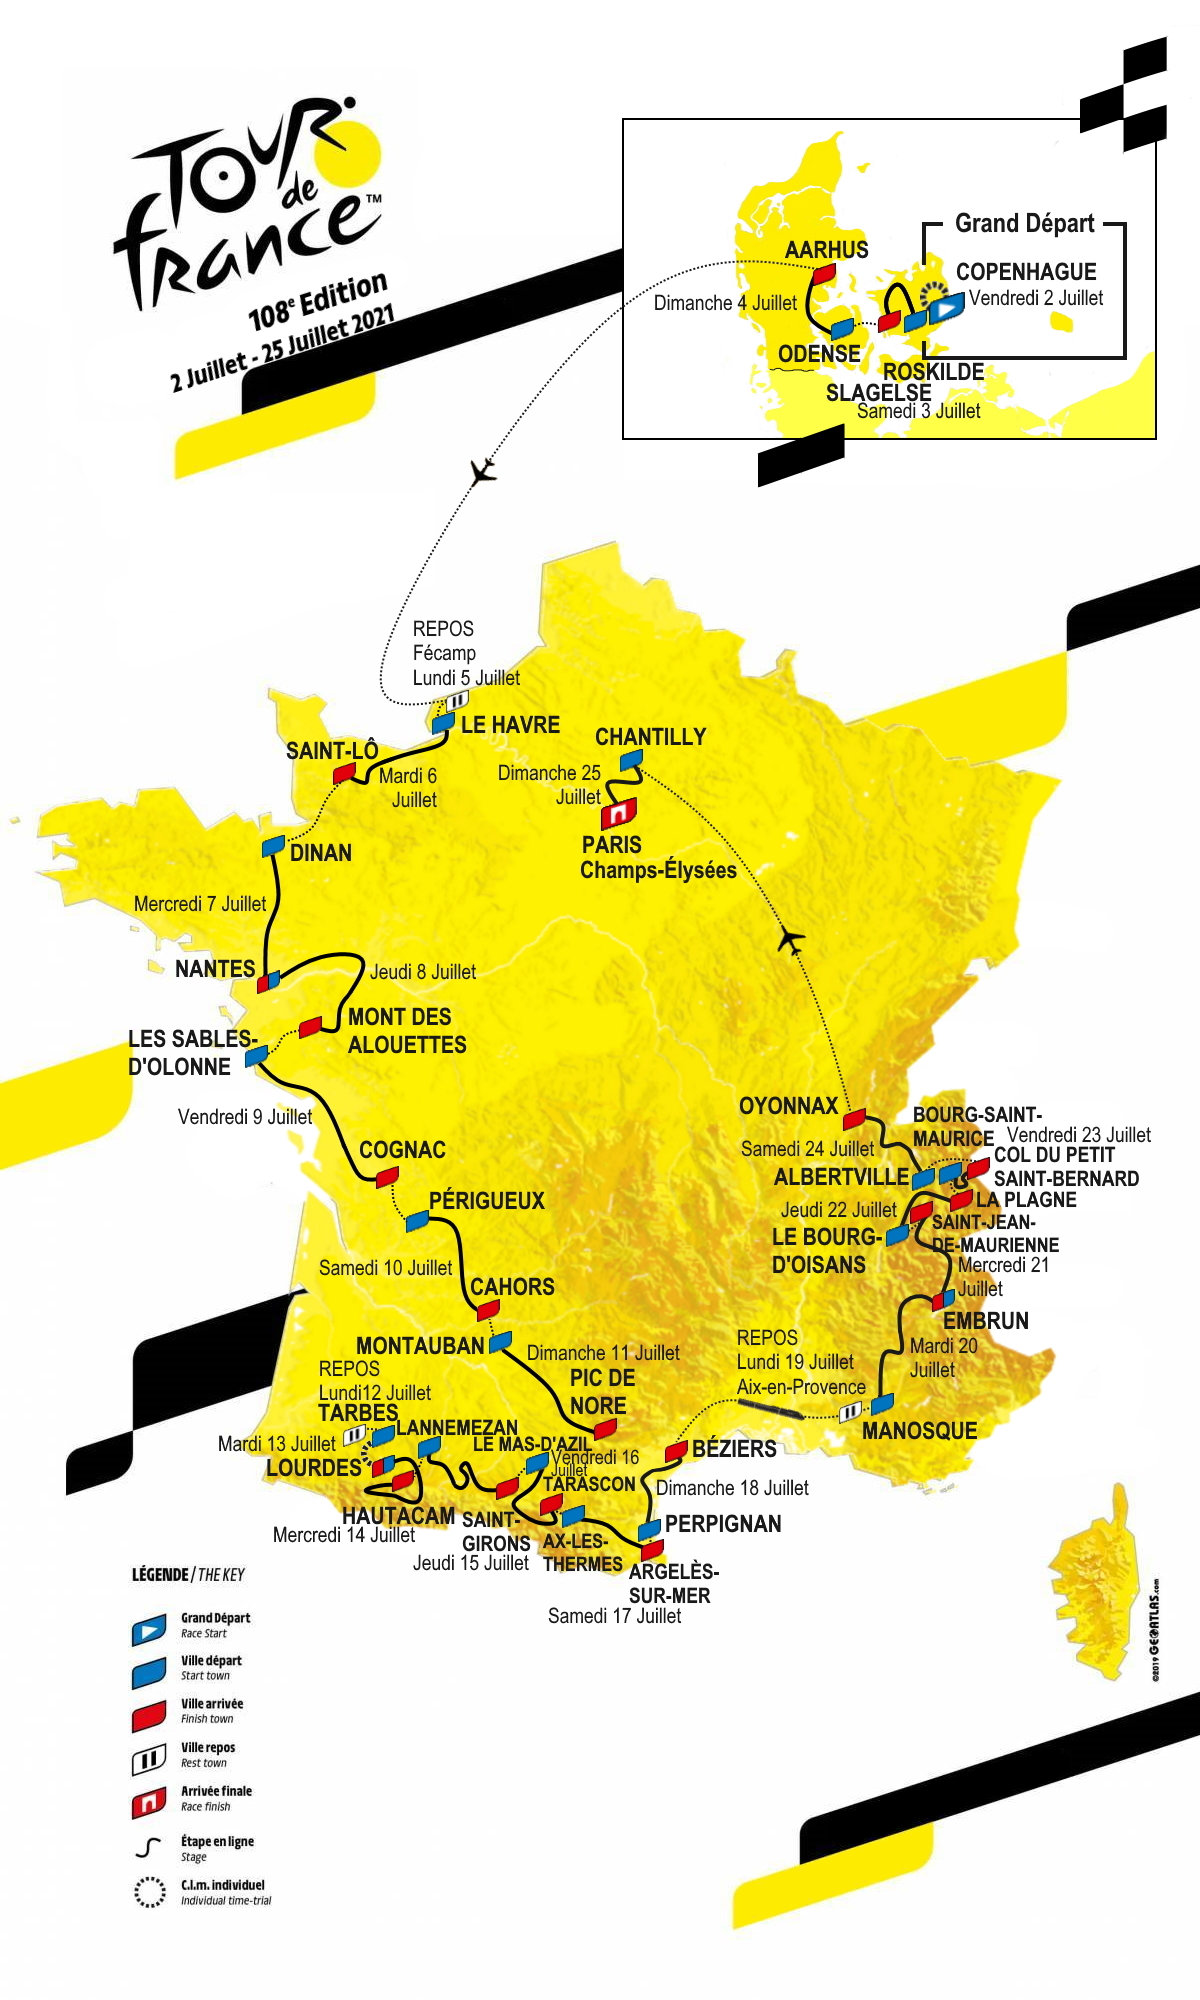 [Concours] Tour de France 2022 - Résultats p.96 - Page 36 - Le